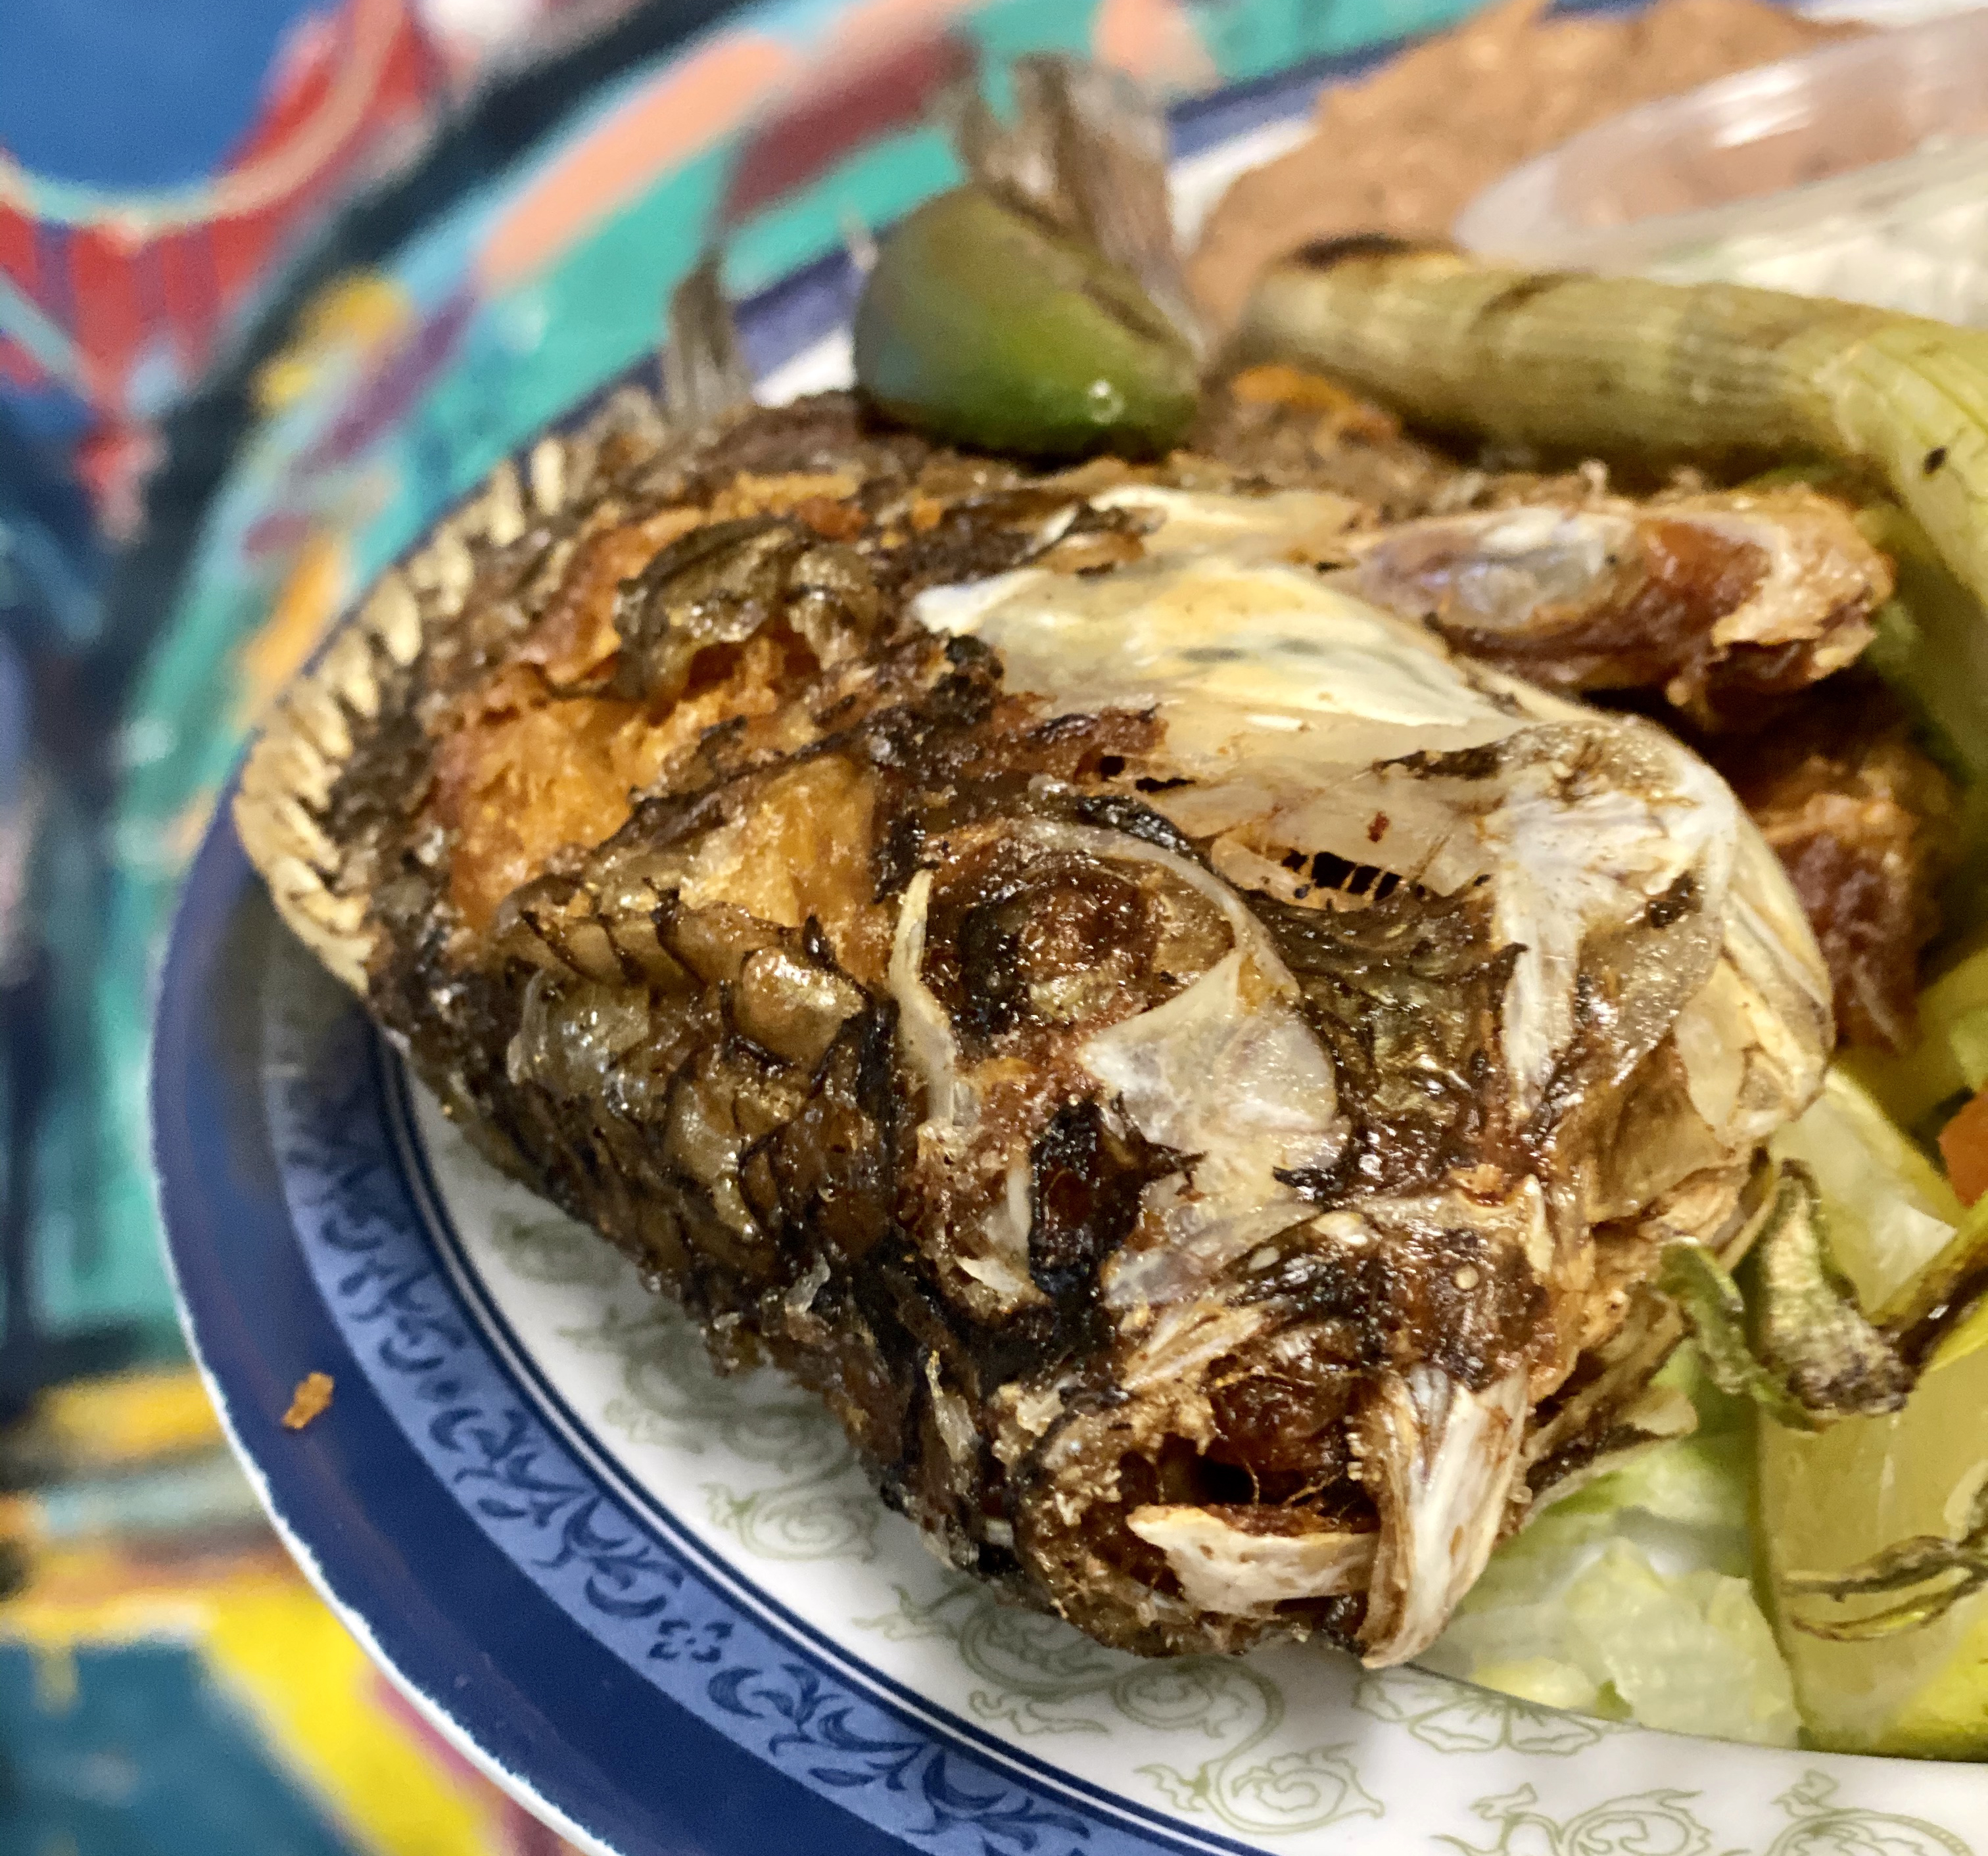 Tacos La Bamba whole fish